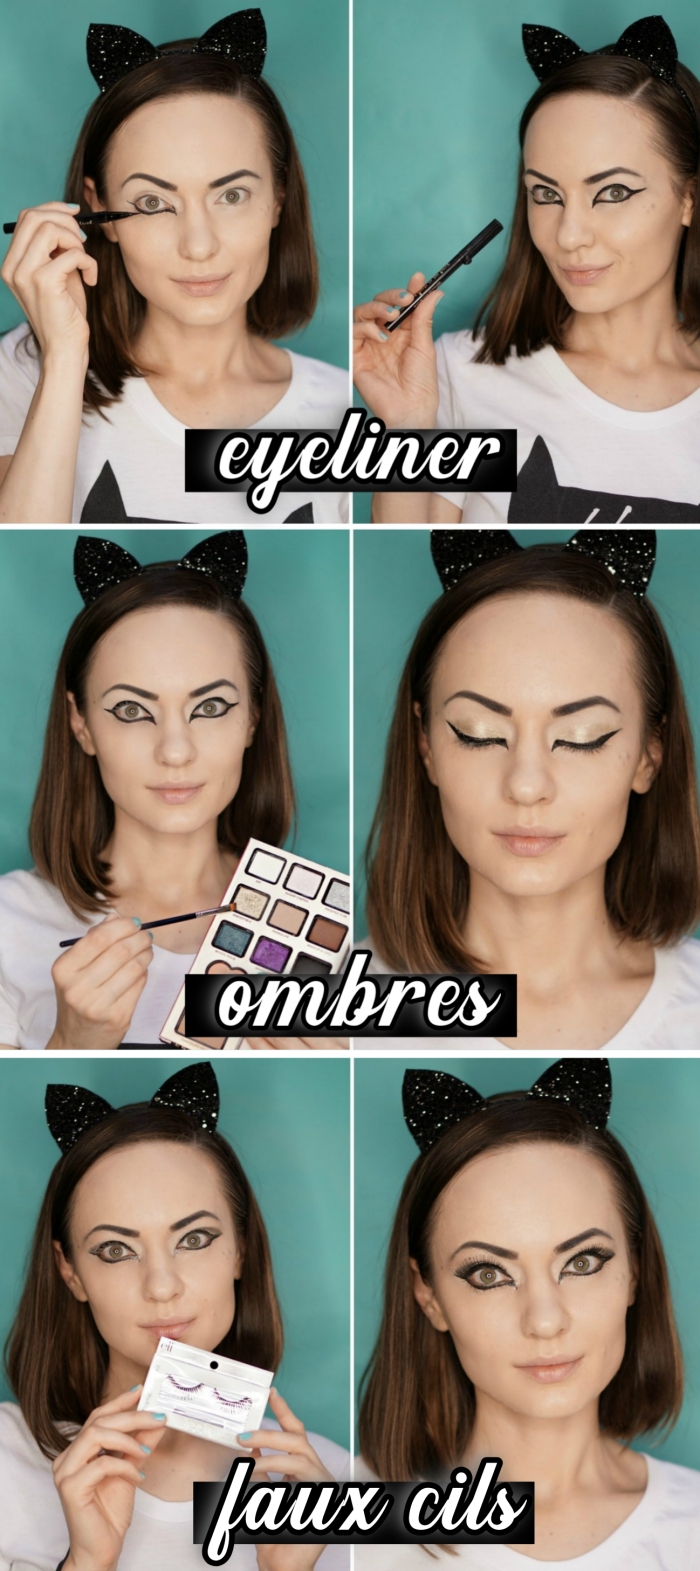 pas à pas maquillage Halloween facile, comment faire un maquillage de chat, étapes à suivre pour réaliser un makeup chat